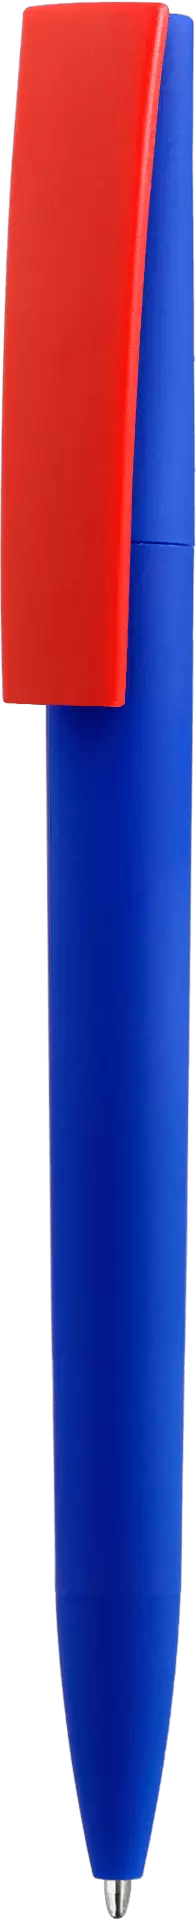 Ручка ZETA SOFT MIX Синяя с красным 1024-01-03